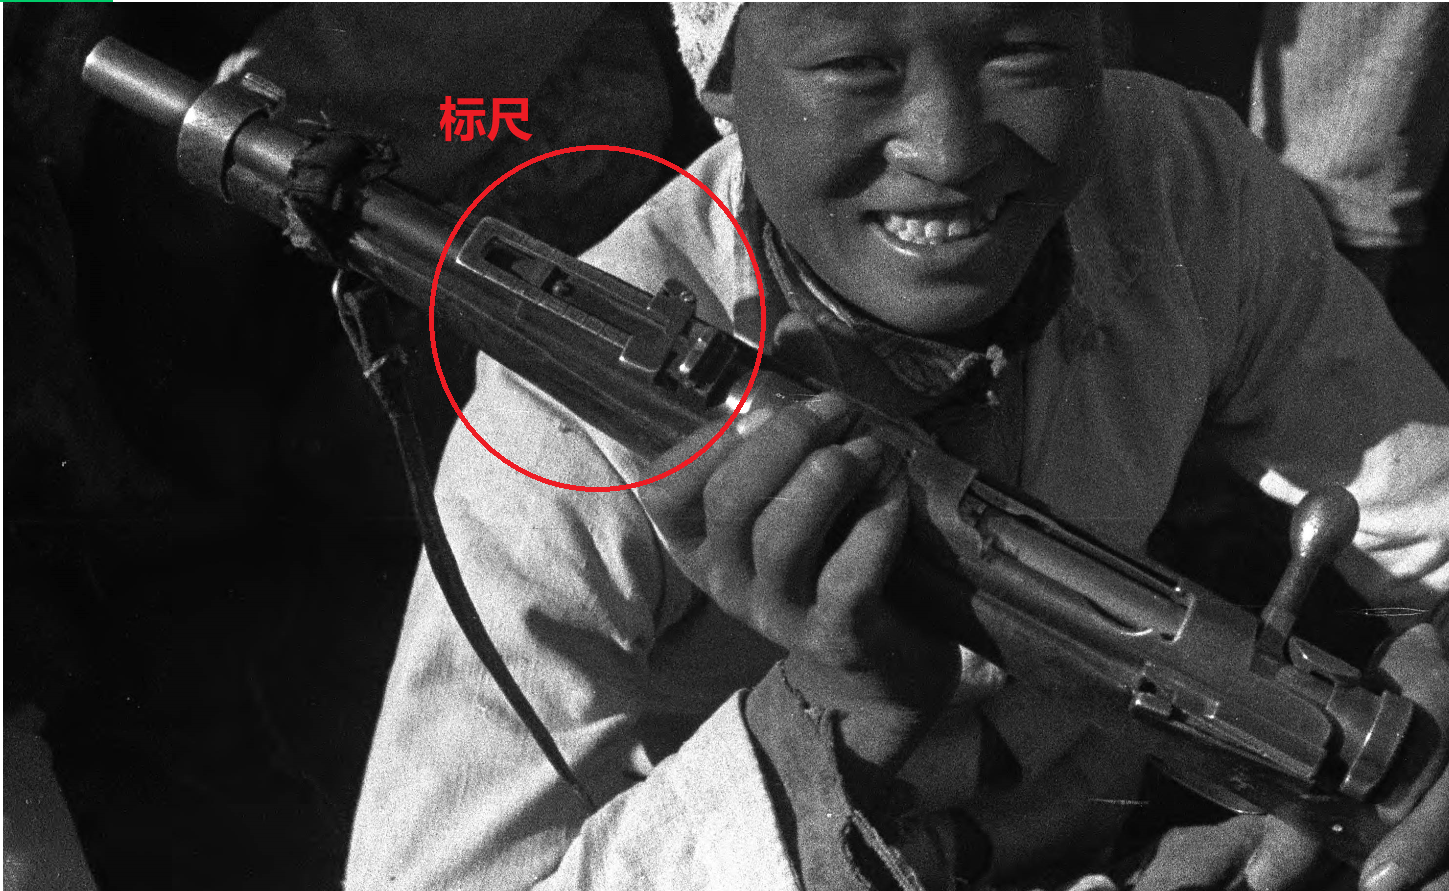 在这张老照片中,这位八路军民兵拿的超短步枪到底是什么枪?